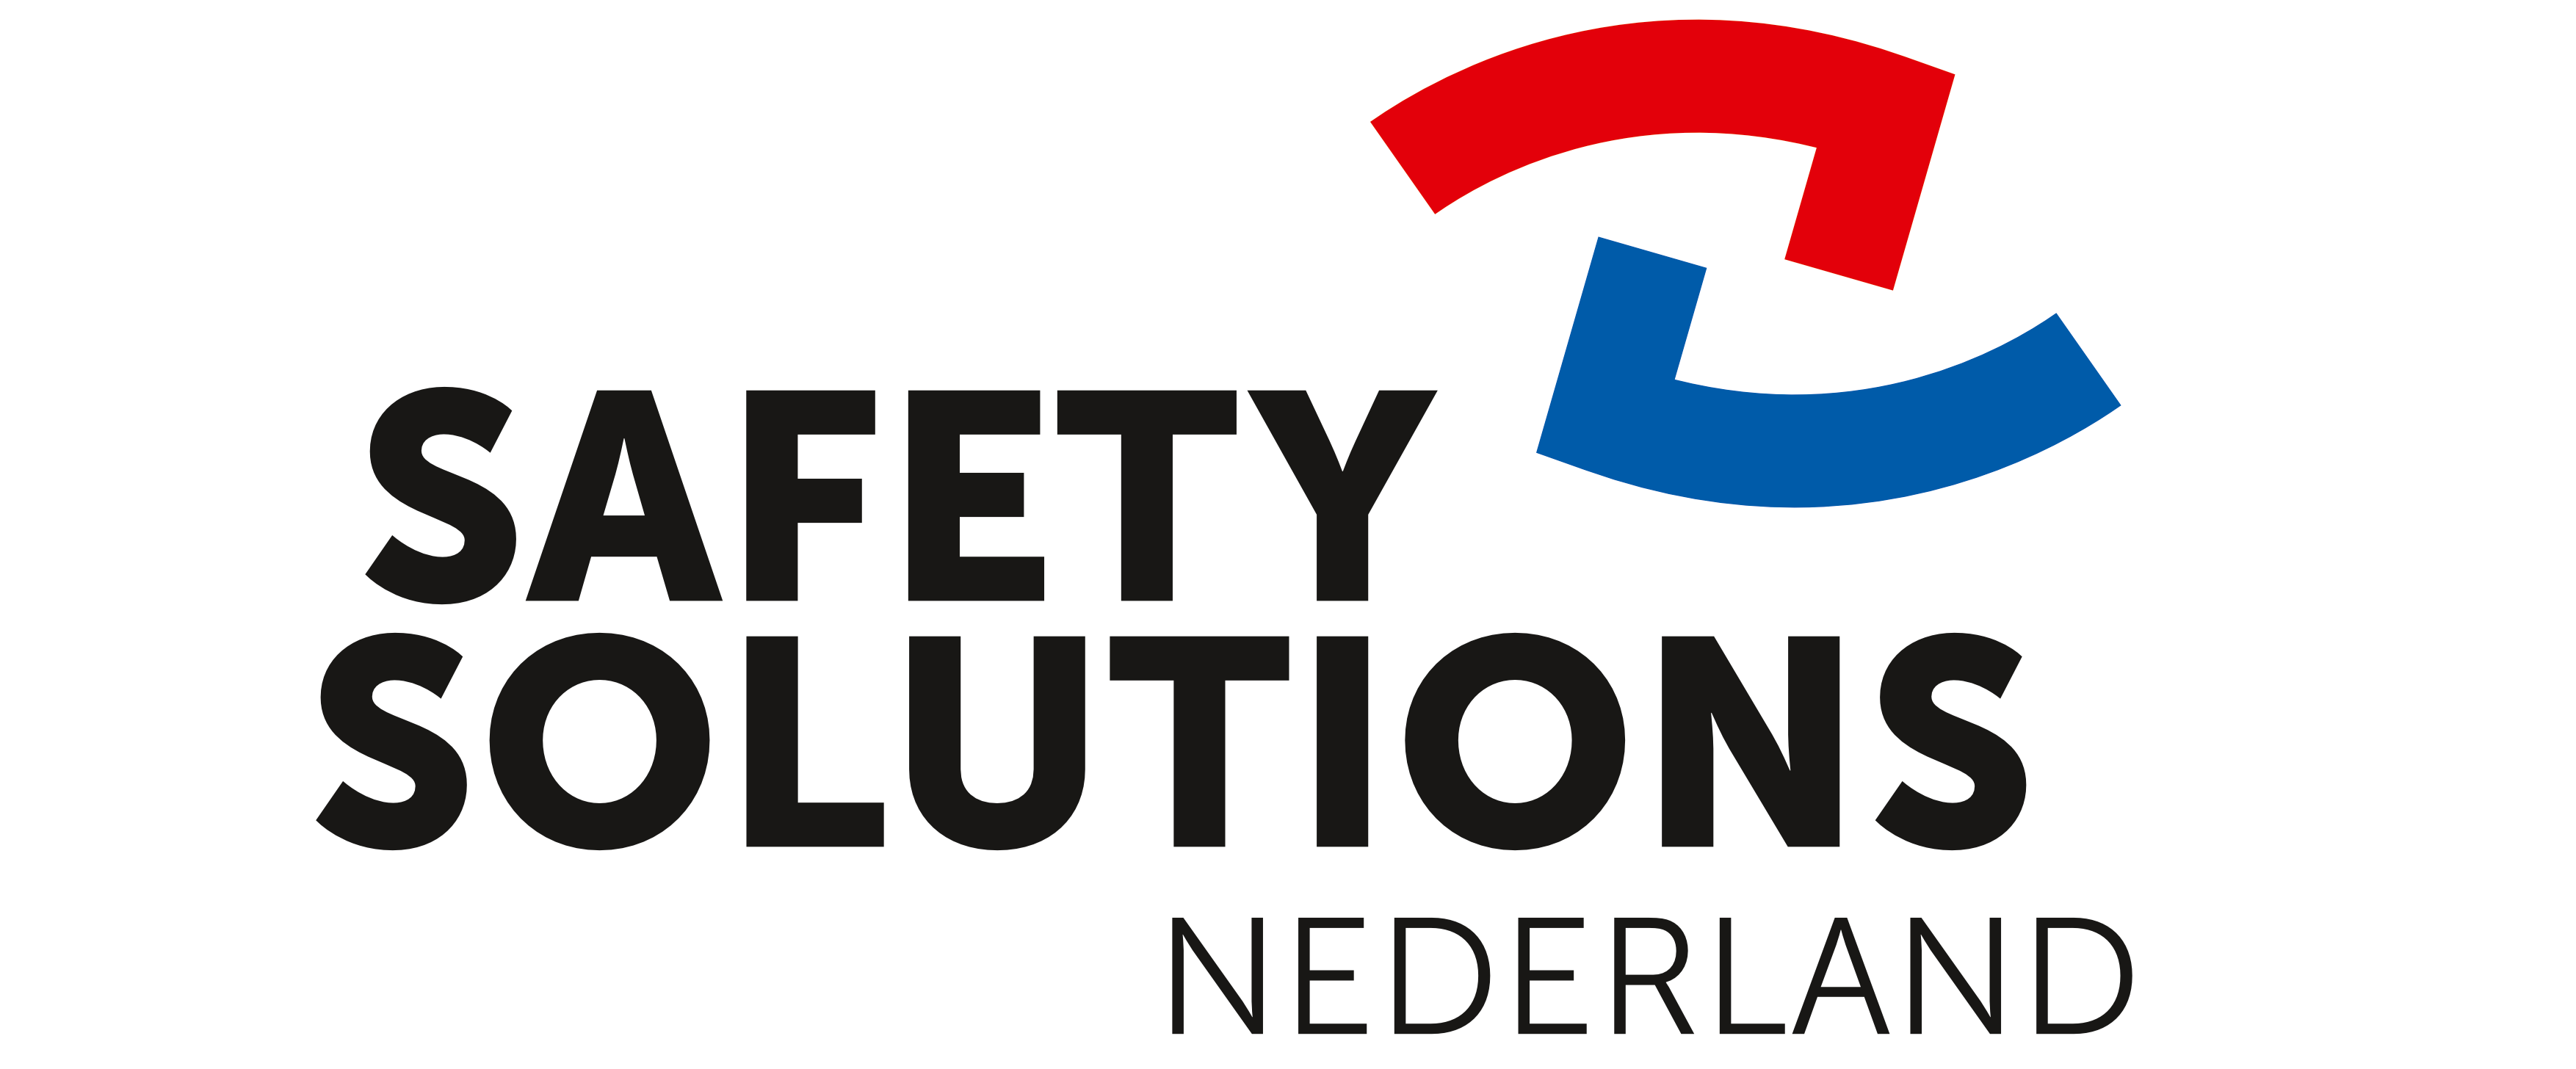 Safety Solutions Nederland